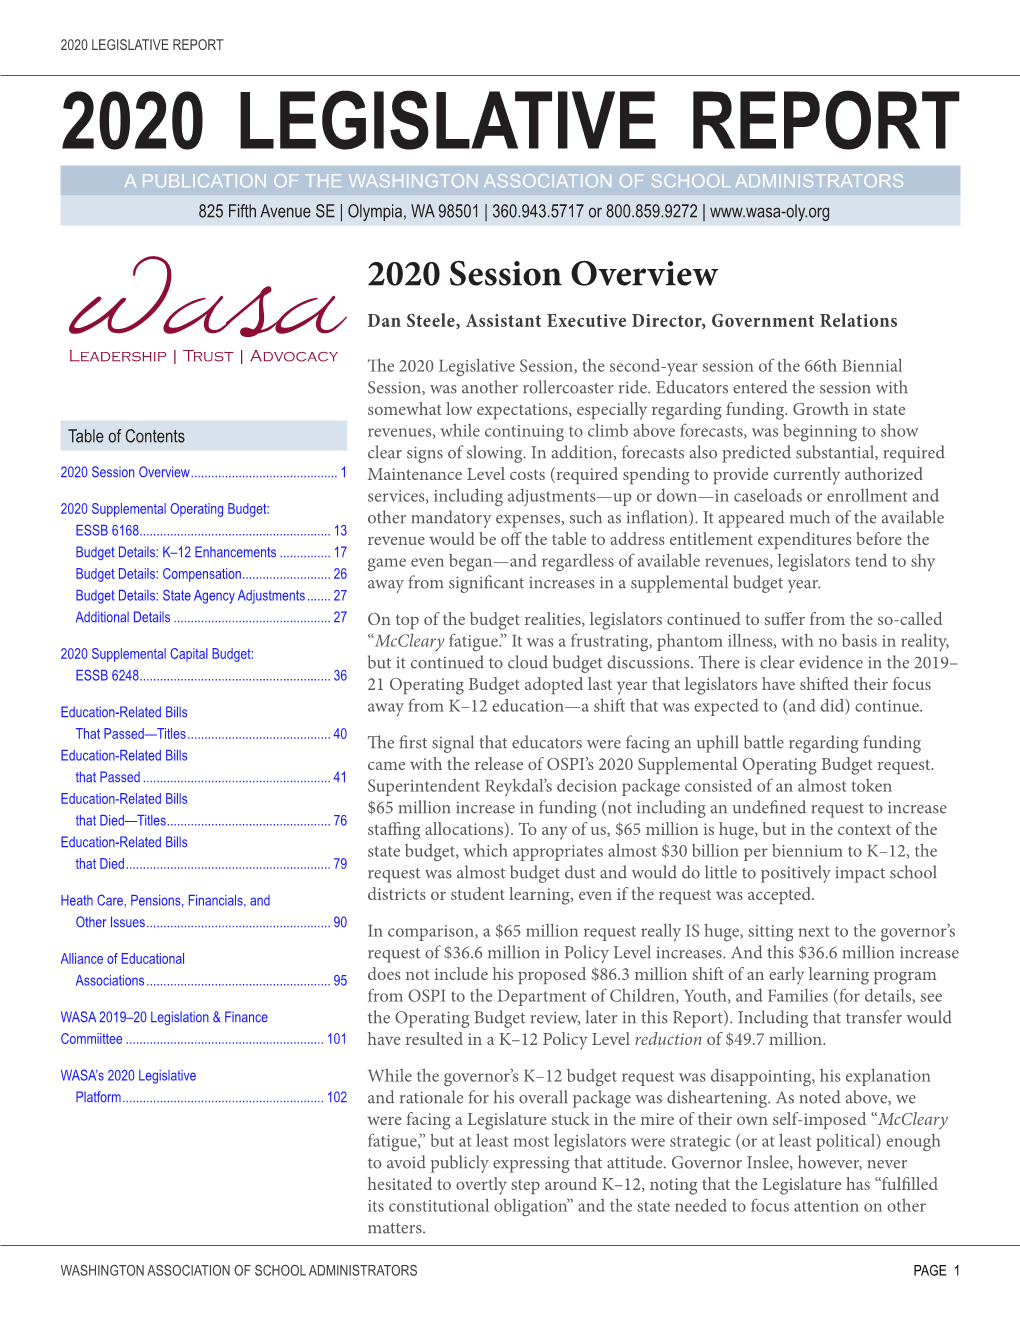 2020 Legislative Report